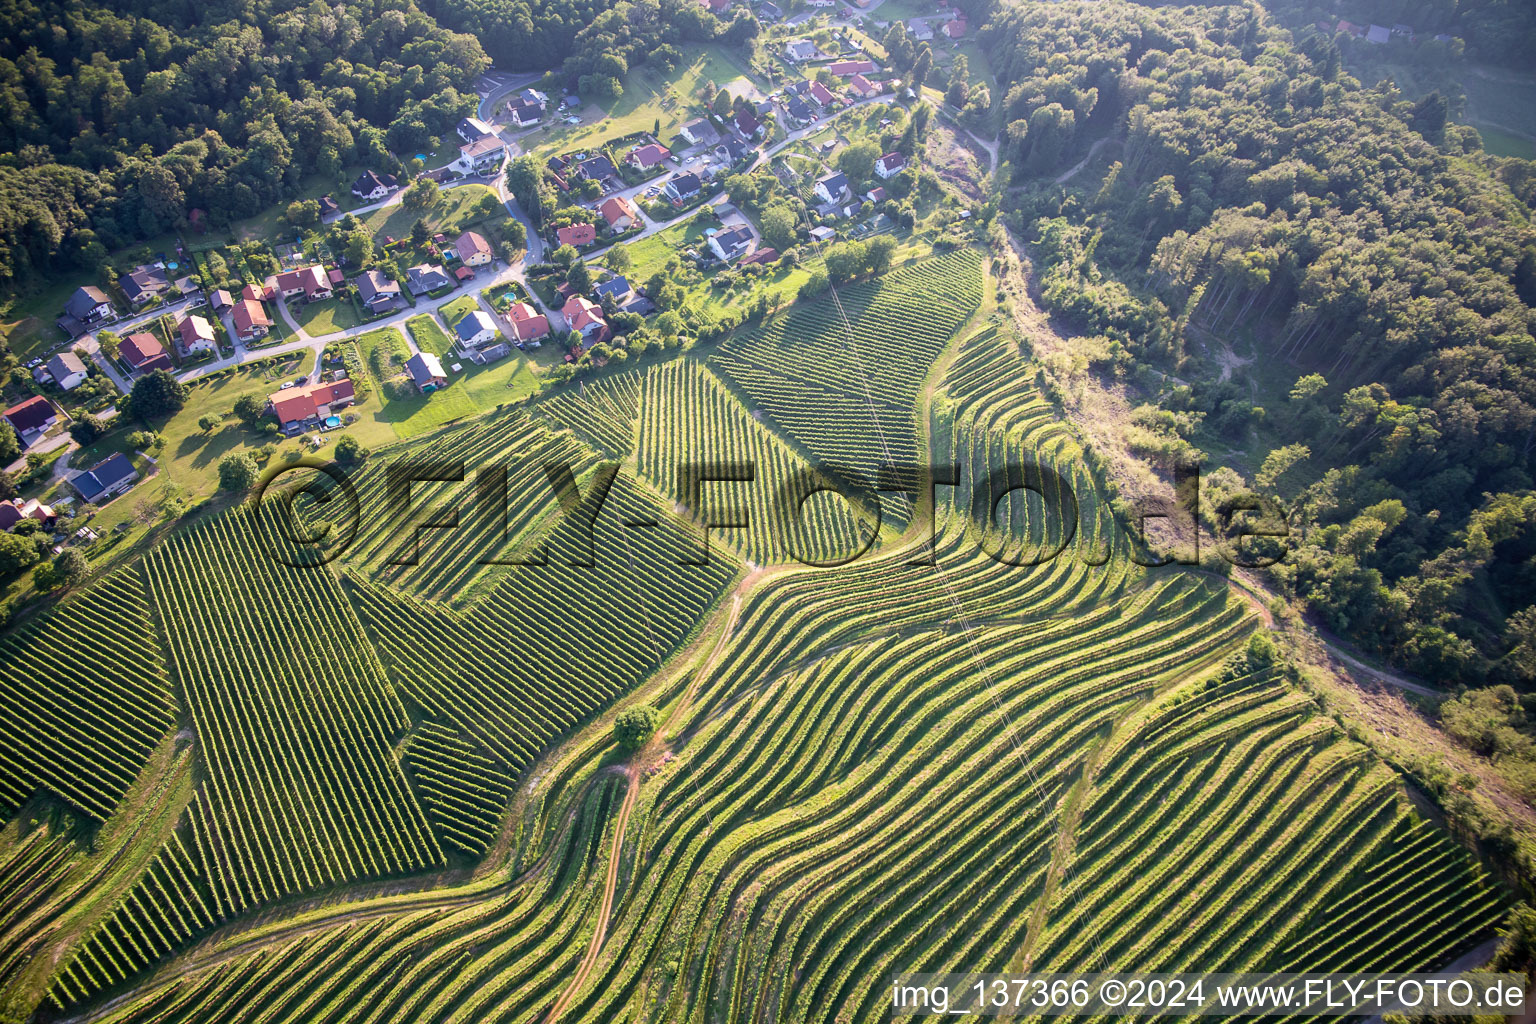 Luftbild von Muster der Rebzeilen von Weinbergen am Vurberg im Ortsteil Vurberk in Duplek, Slowenien